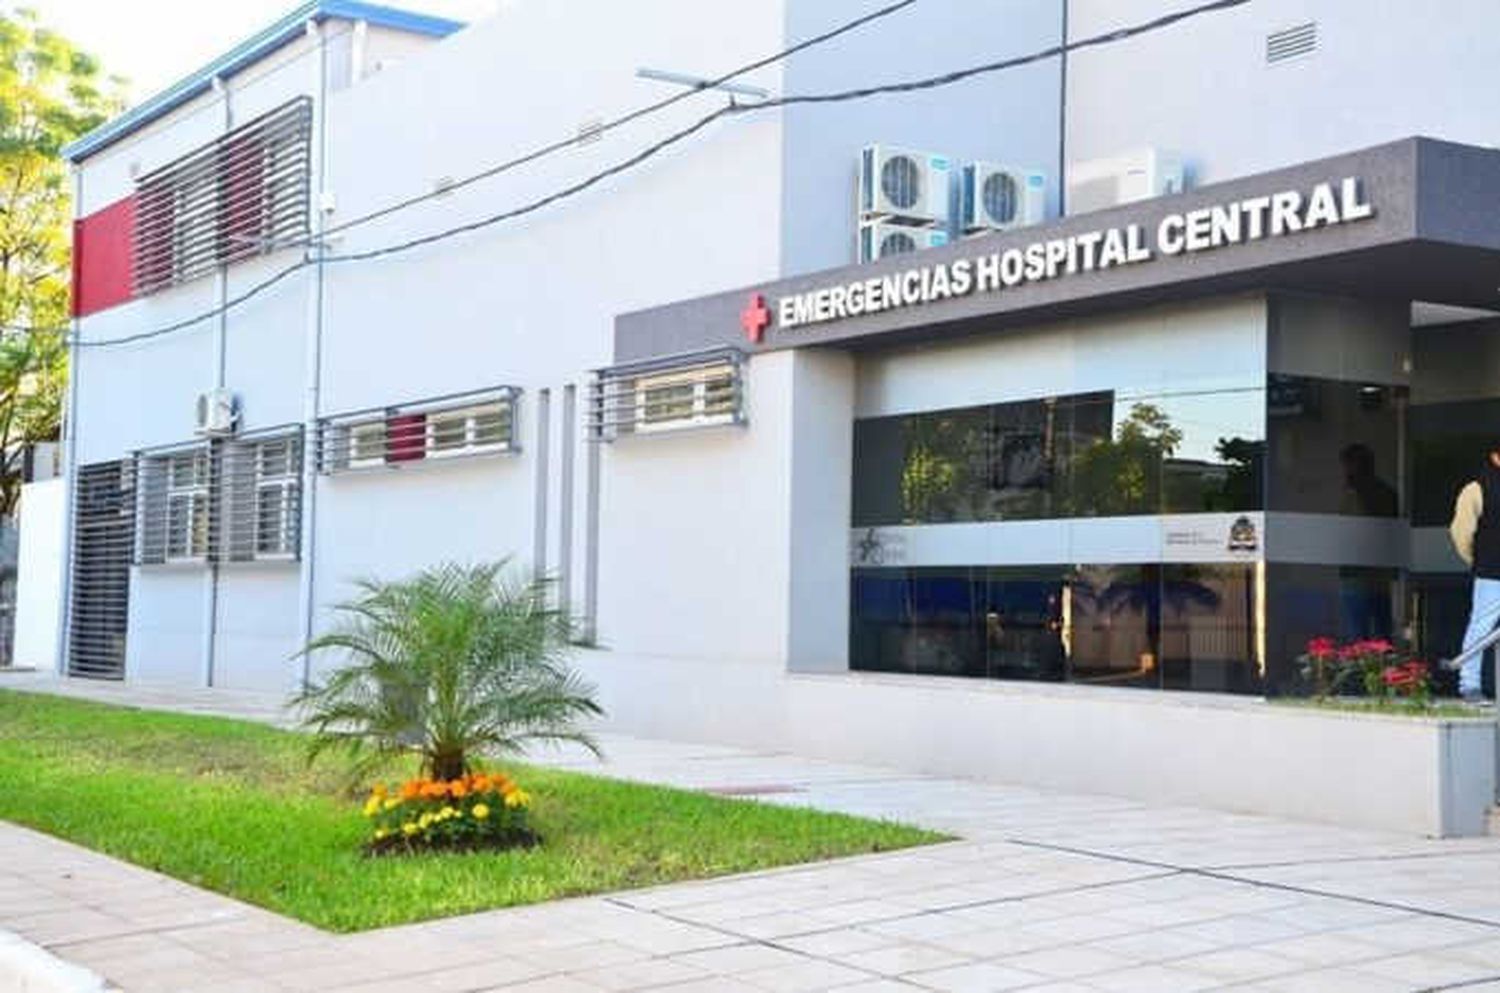 El Hospital Central informó sobre modificaciones para la gestión de turnos y la ampliación de prestaciones